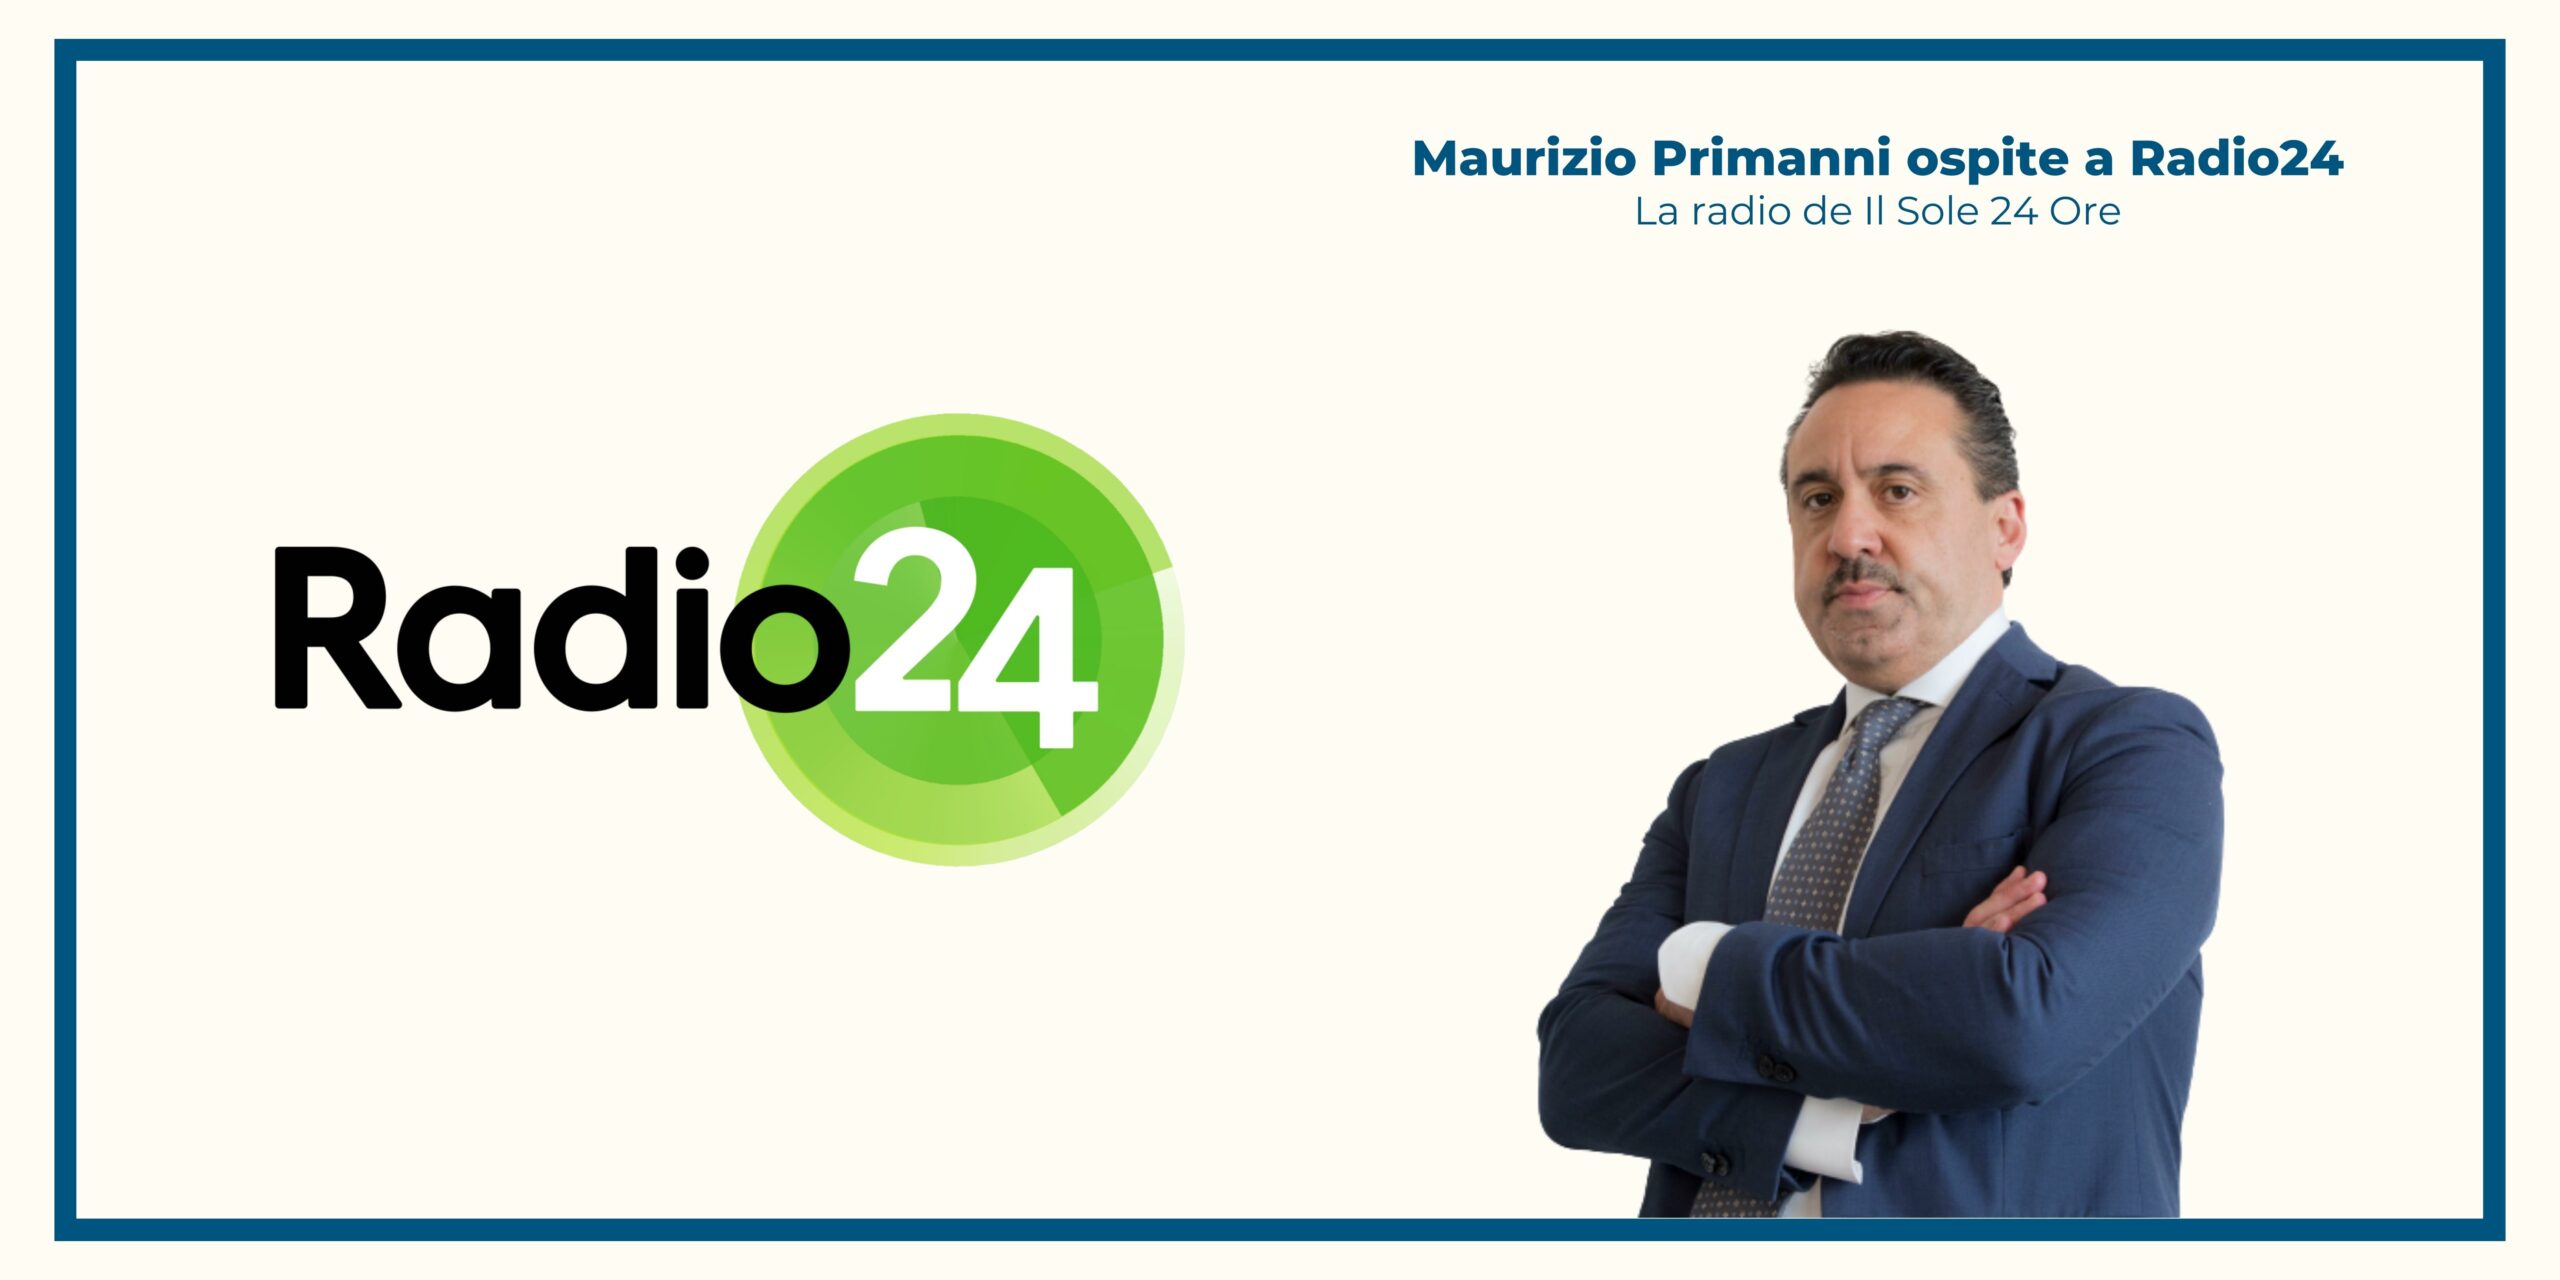 Maurizio Primanni a Radio24: “La banca del terzo millennio? Più tecnologica, ma il ruolo del consulente finanziario rimarrà centrale”